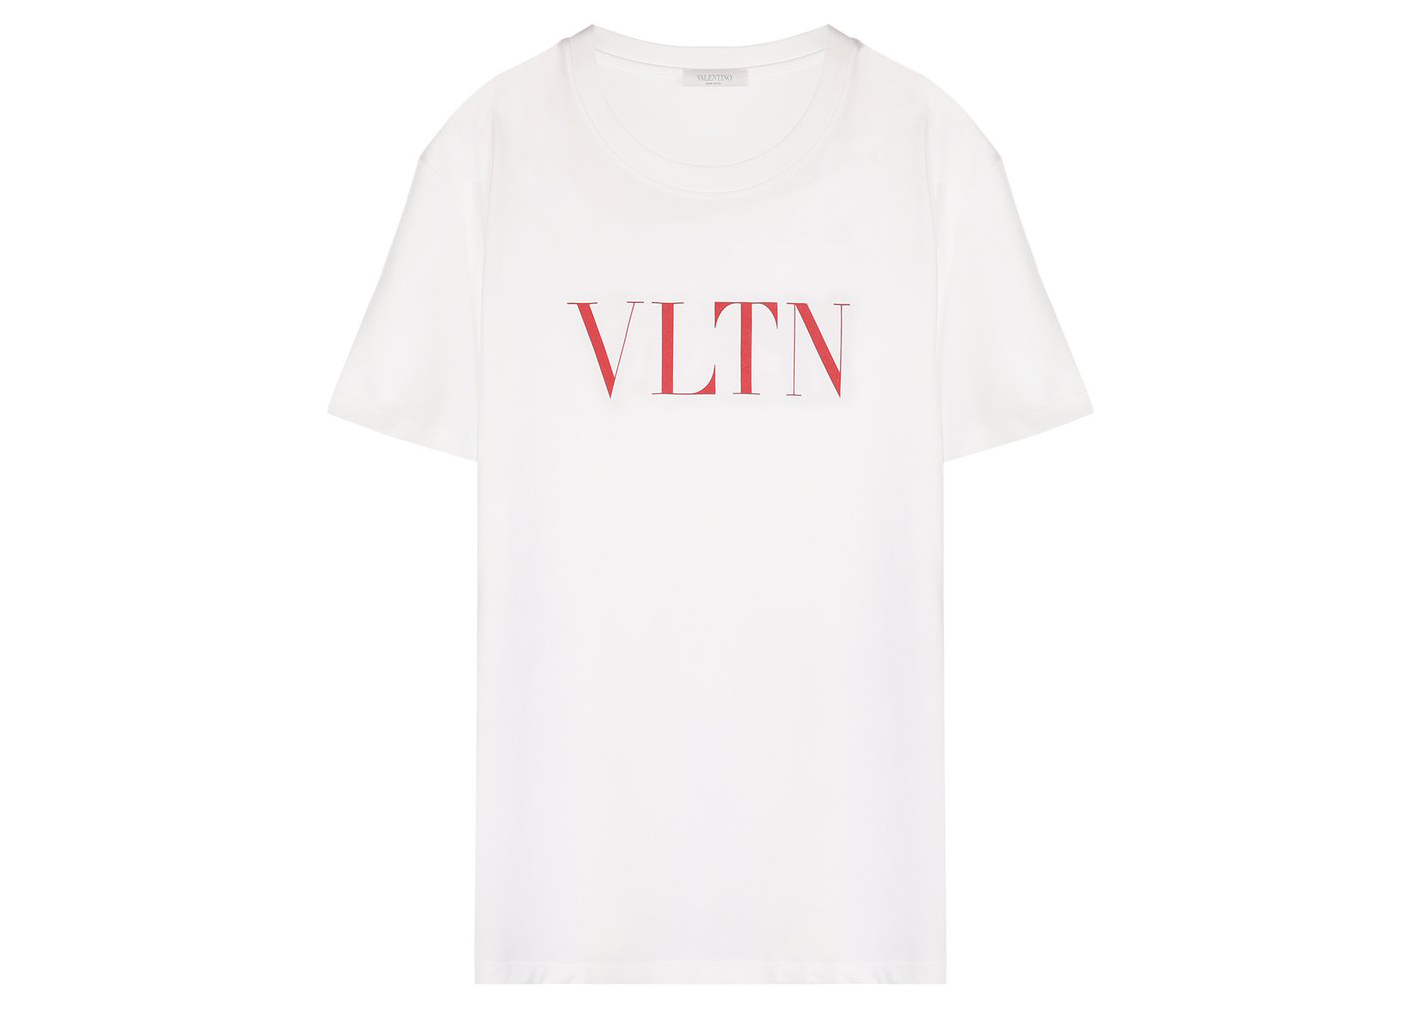 Valentino VLTN Print T-shirt White/Red